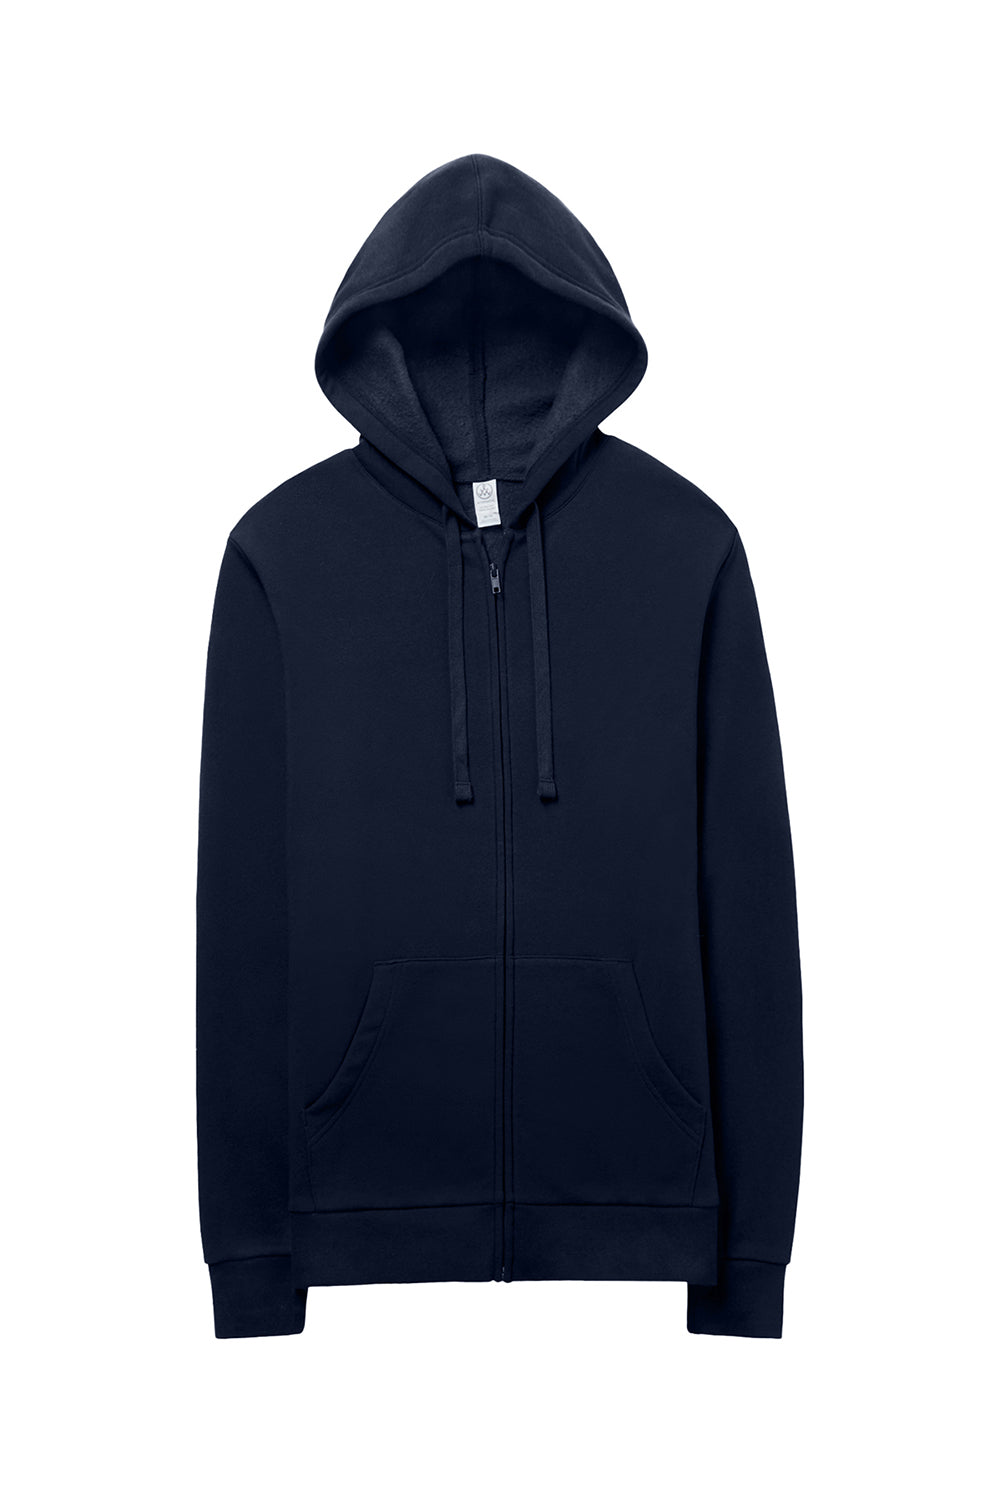 Alternative 8805PF Mens Eco Cozy Fleece Full Zip Hooded Sweatshirt Hoodie Midnight Navy Blue Flat Front